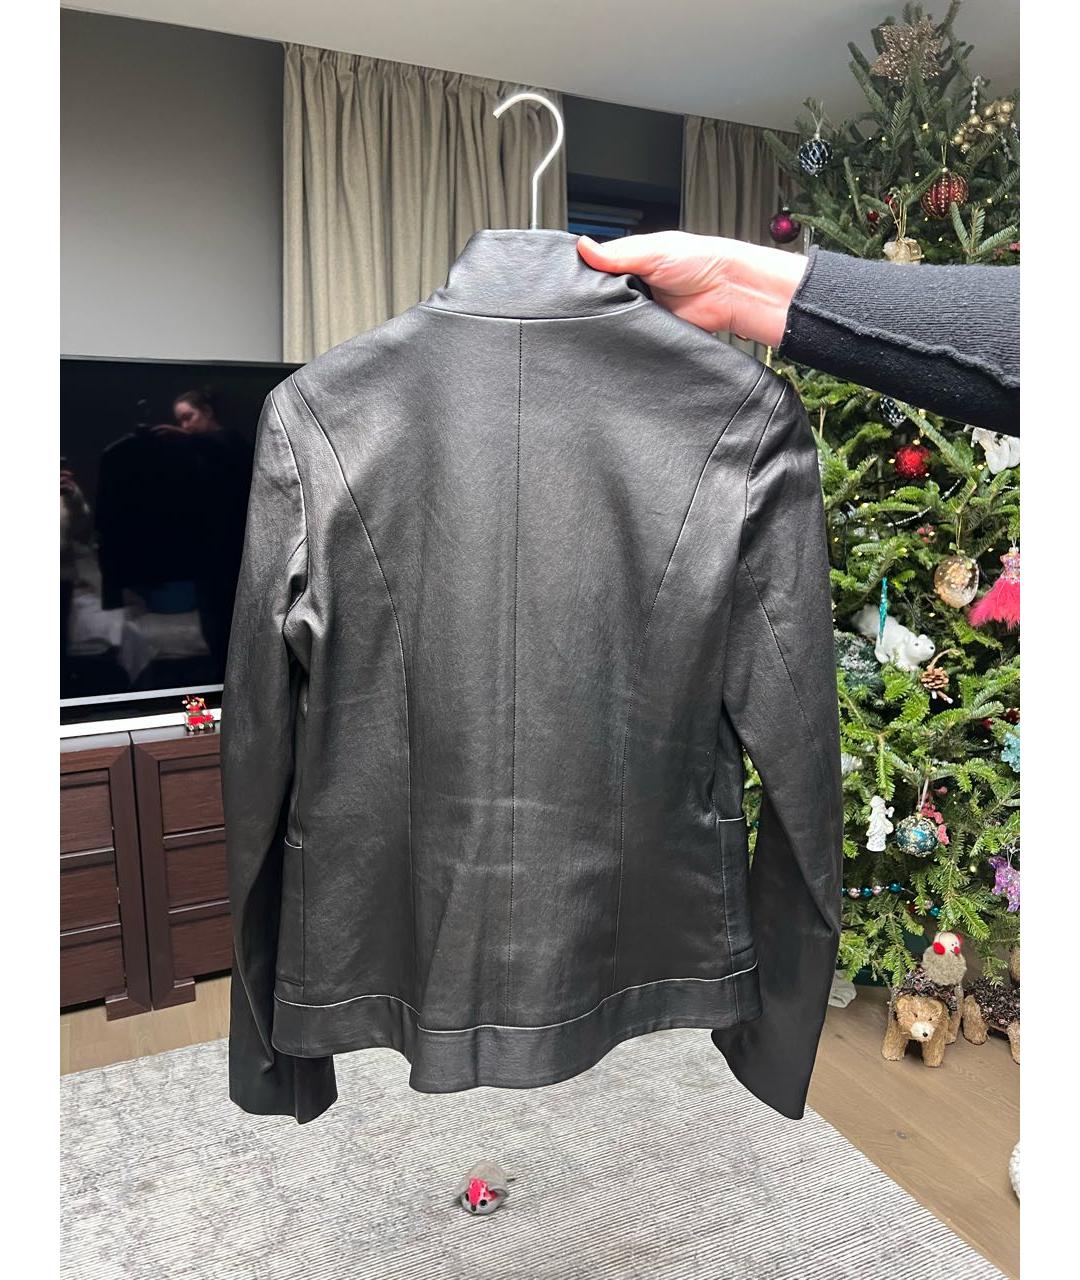 CHANEL PRE-OWNED Черный кожаный жакет/пиджак, фото 2